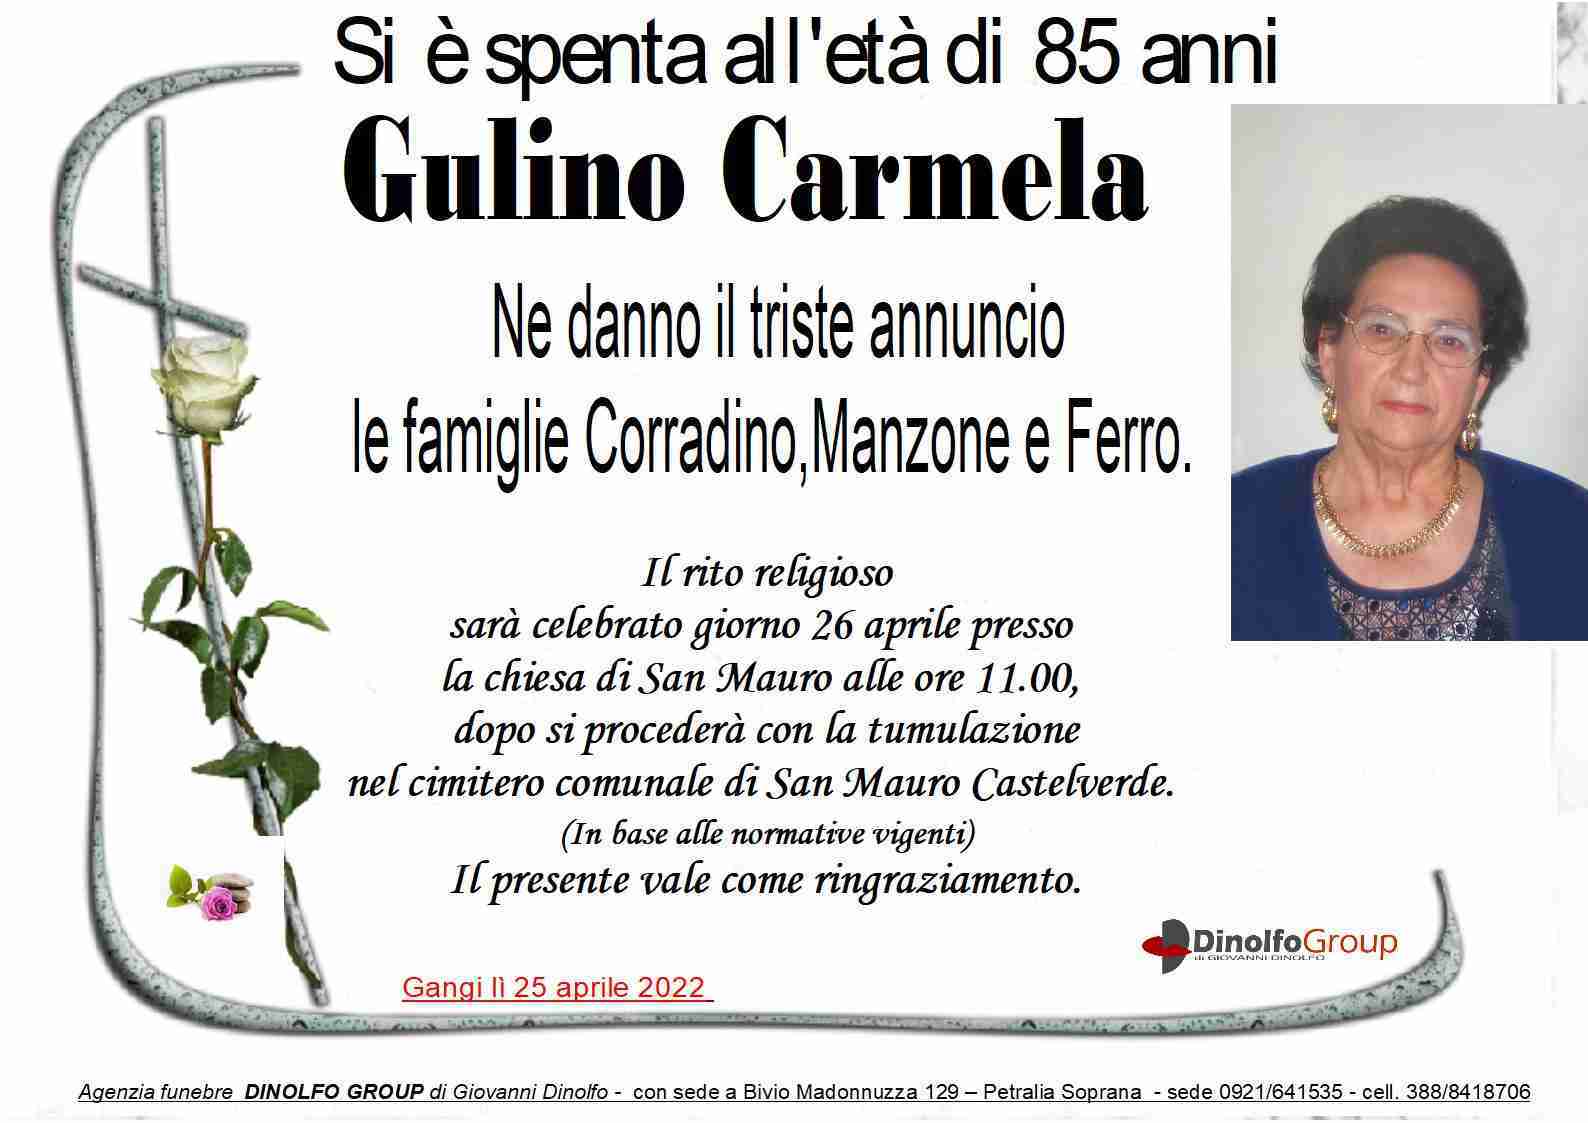 Carmela Gulino